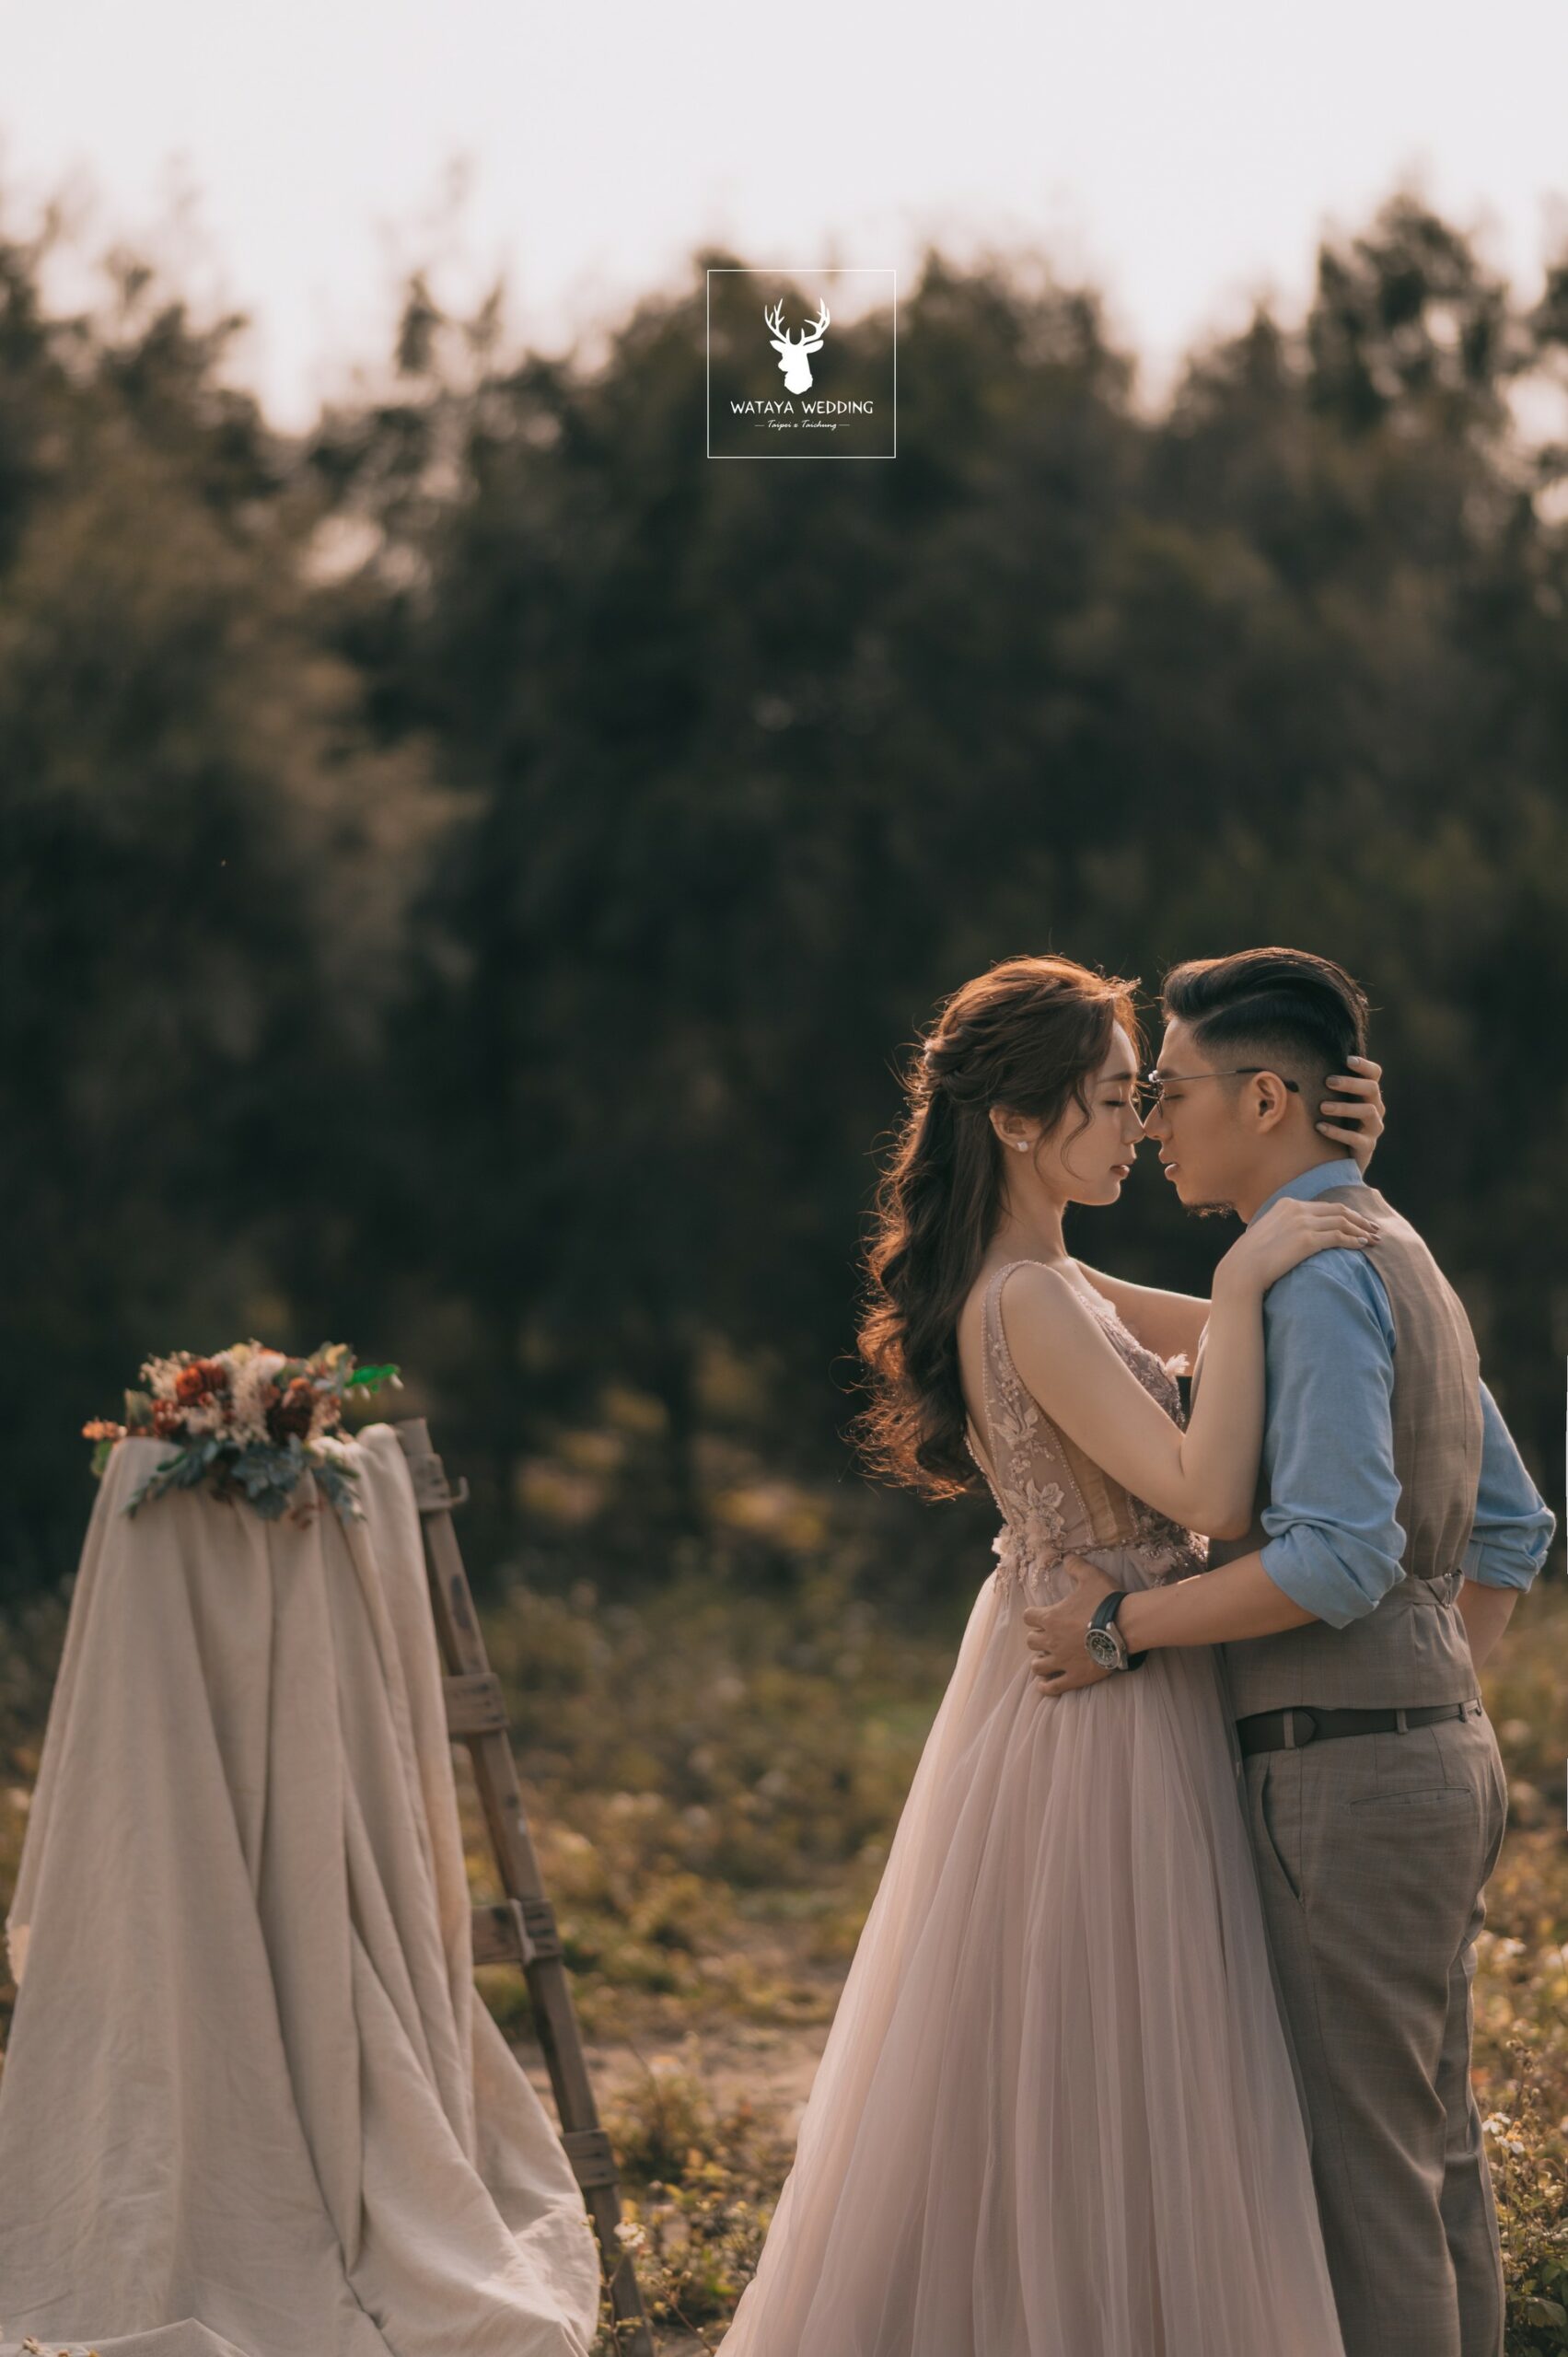 綿谷結婚式-婚紗攝影作品 (24)